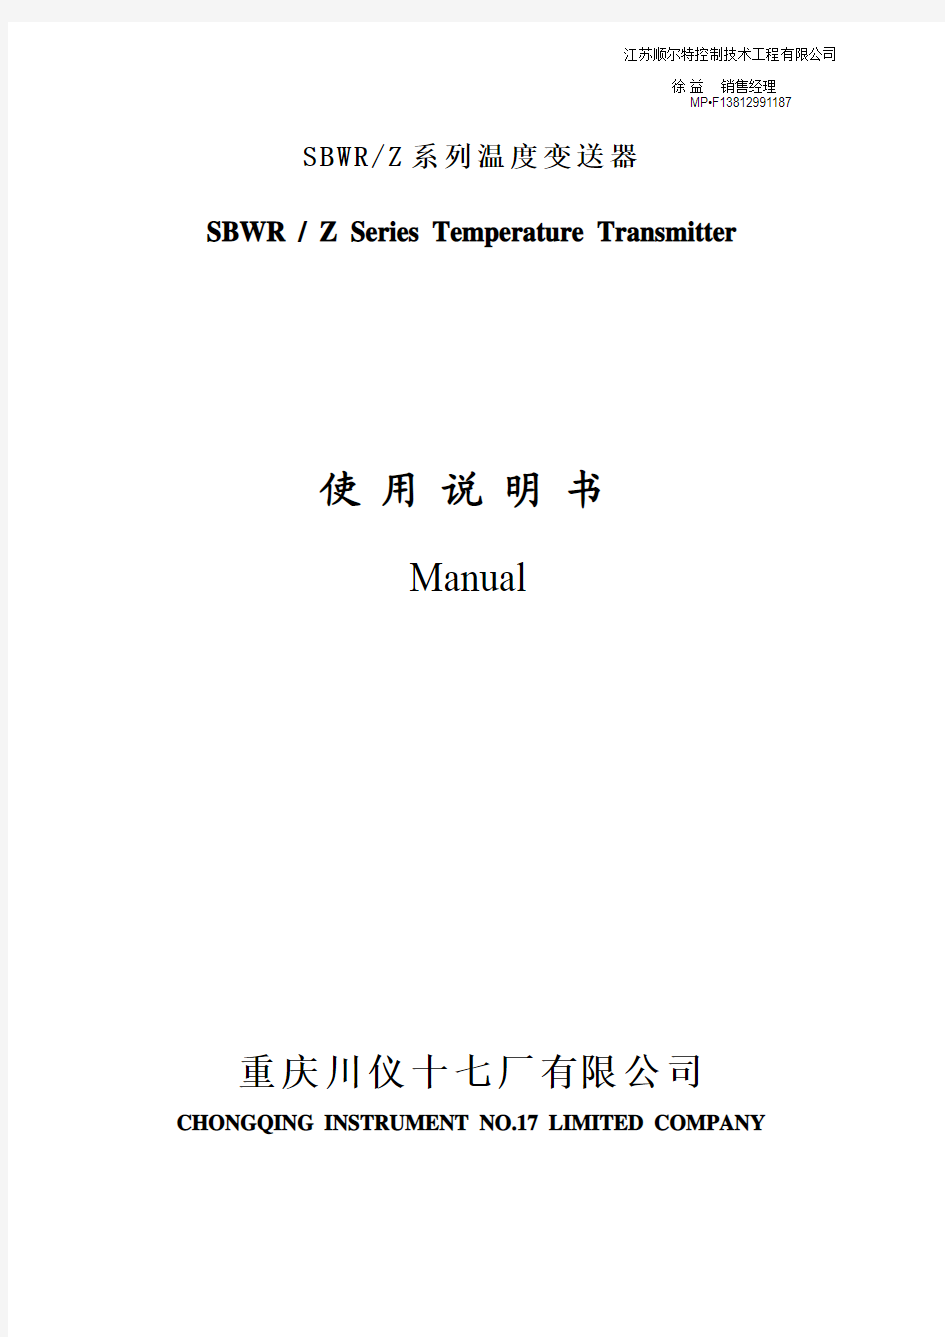 温度变送器使用说明书(5-1)